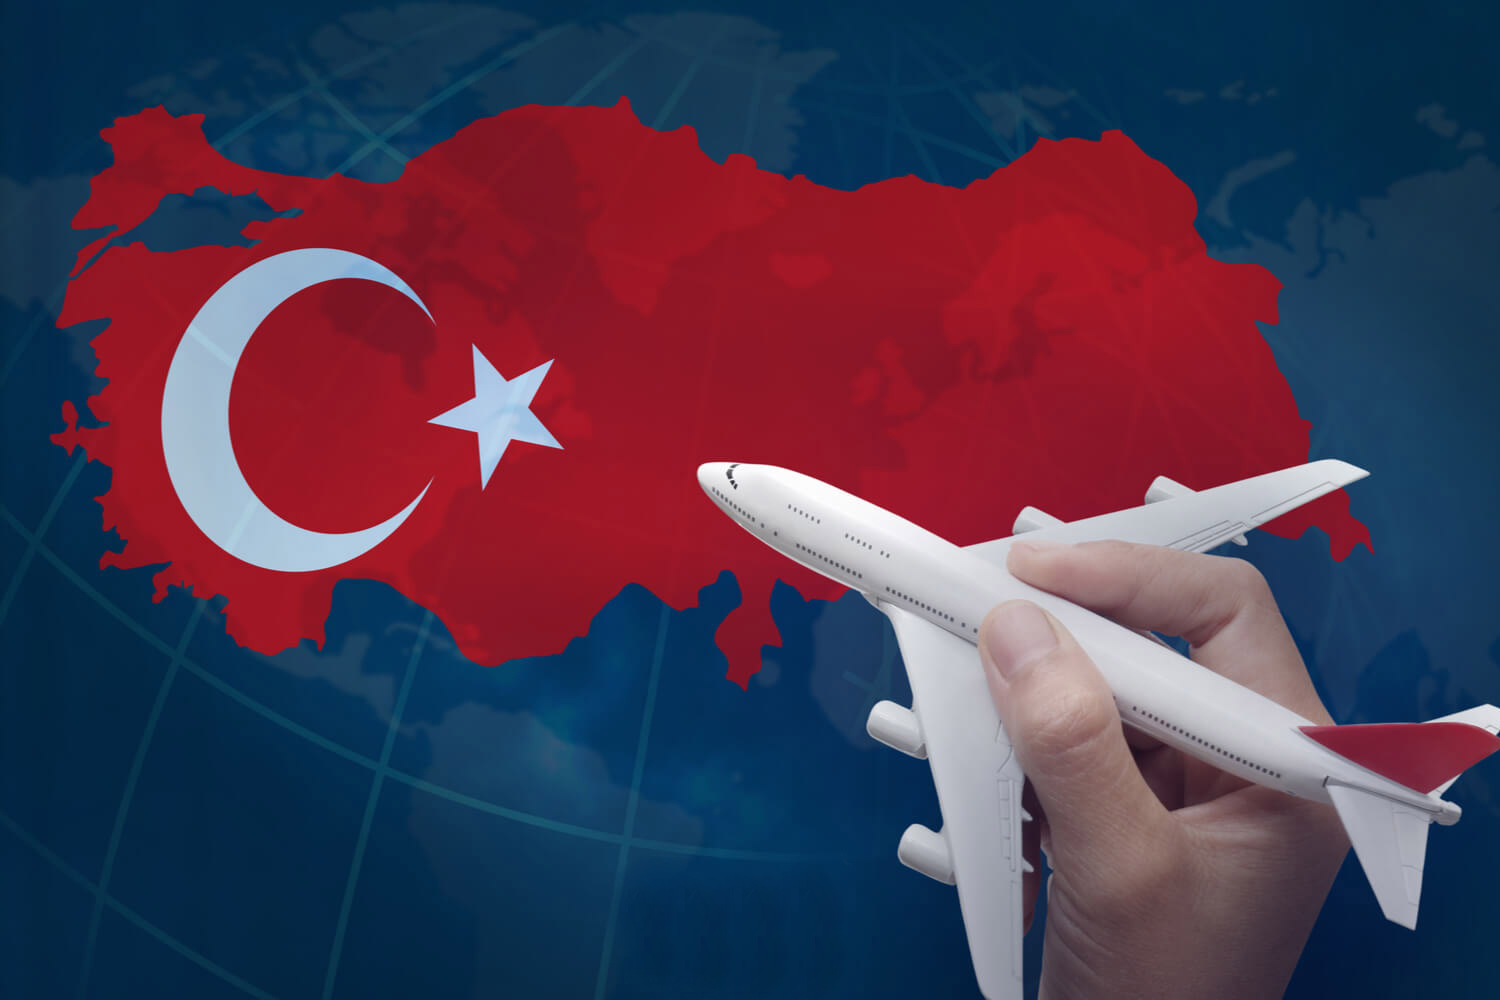 سفر به ترکیه